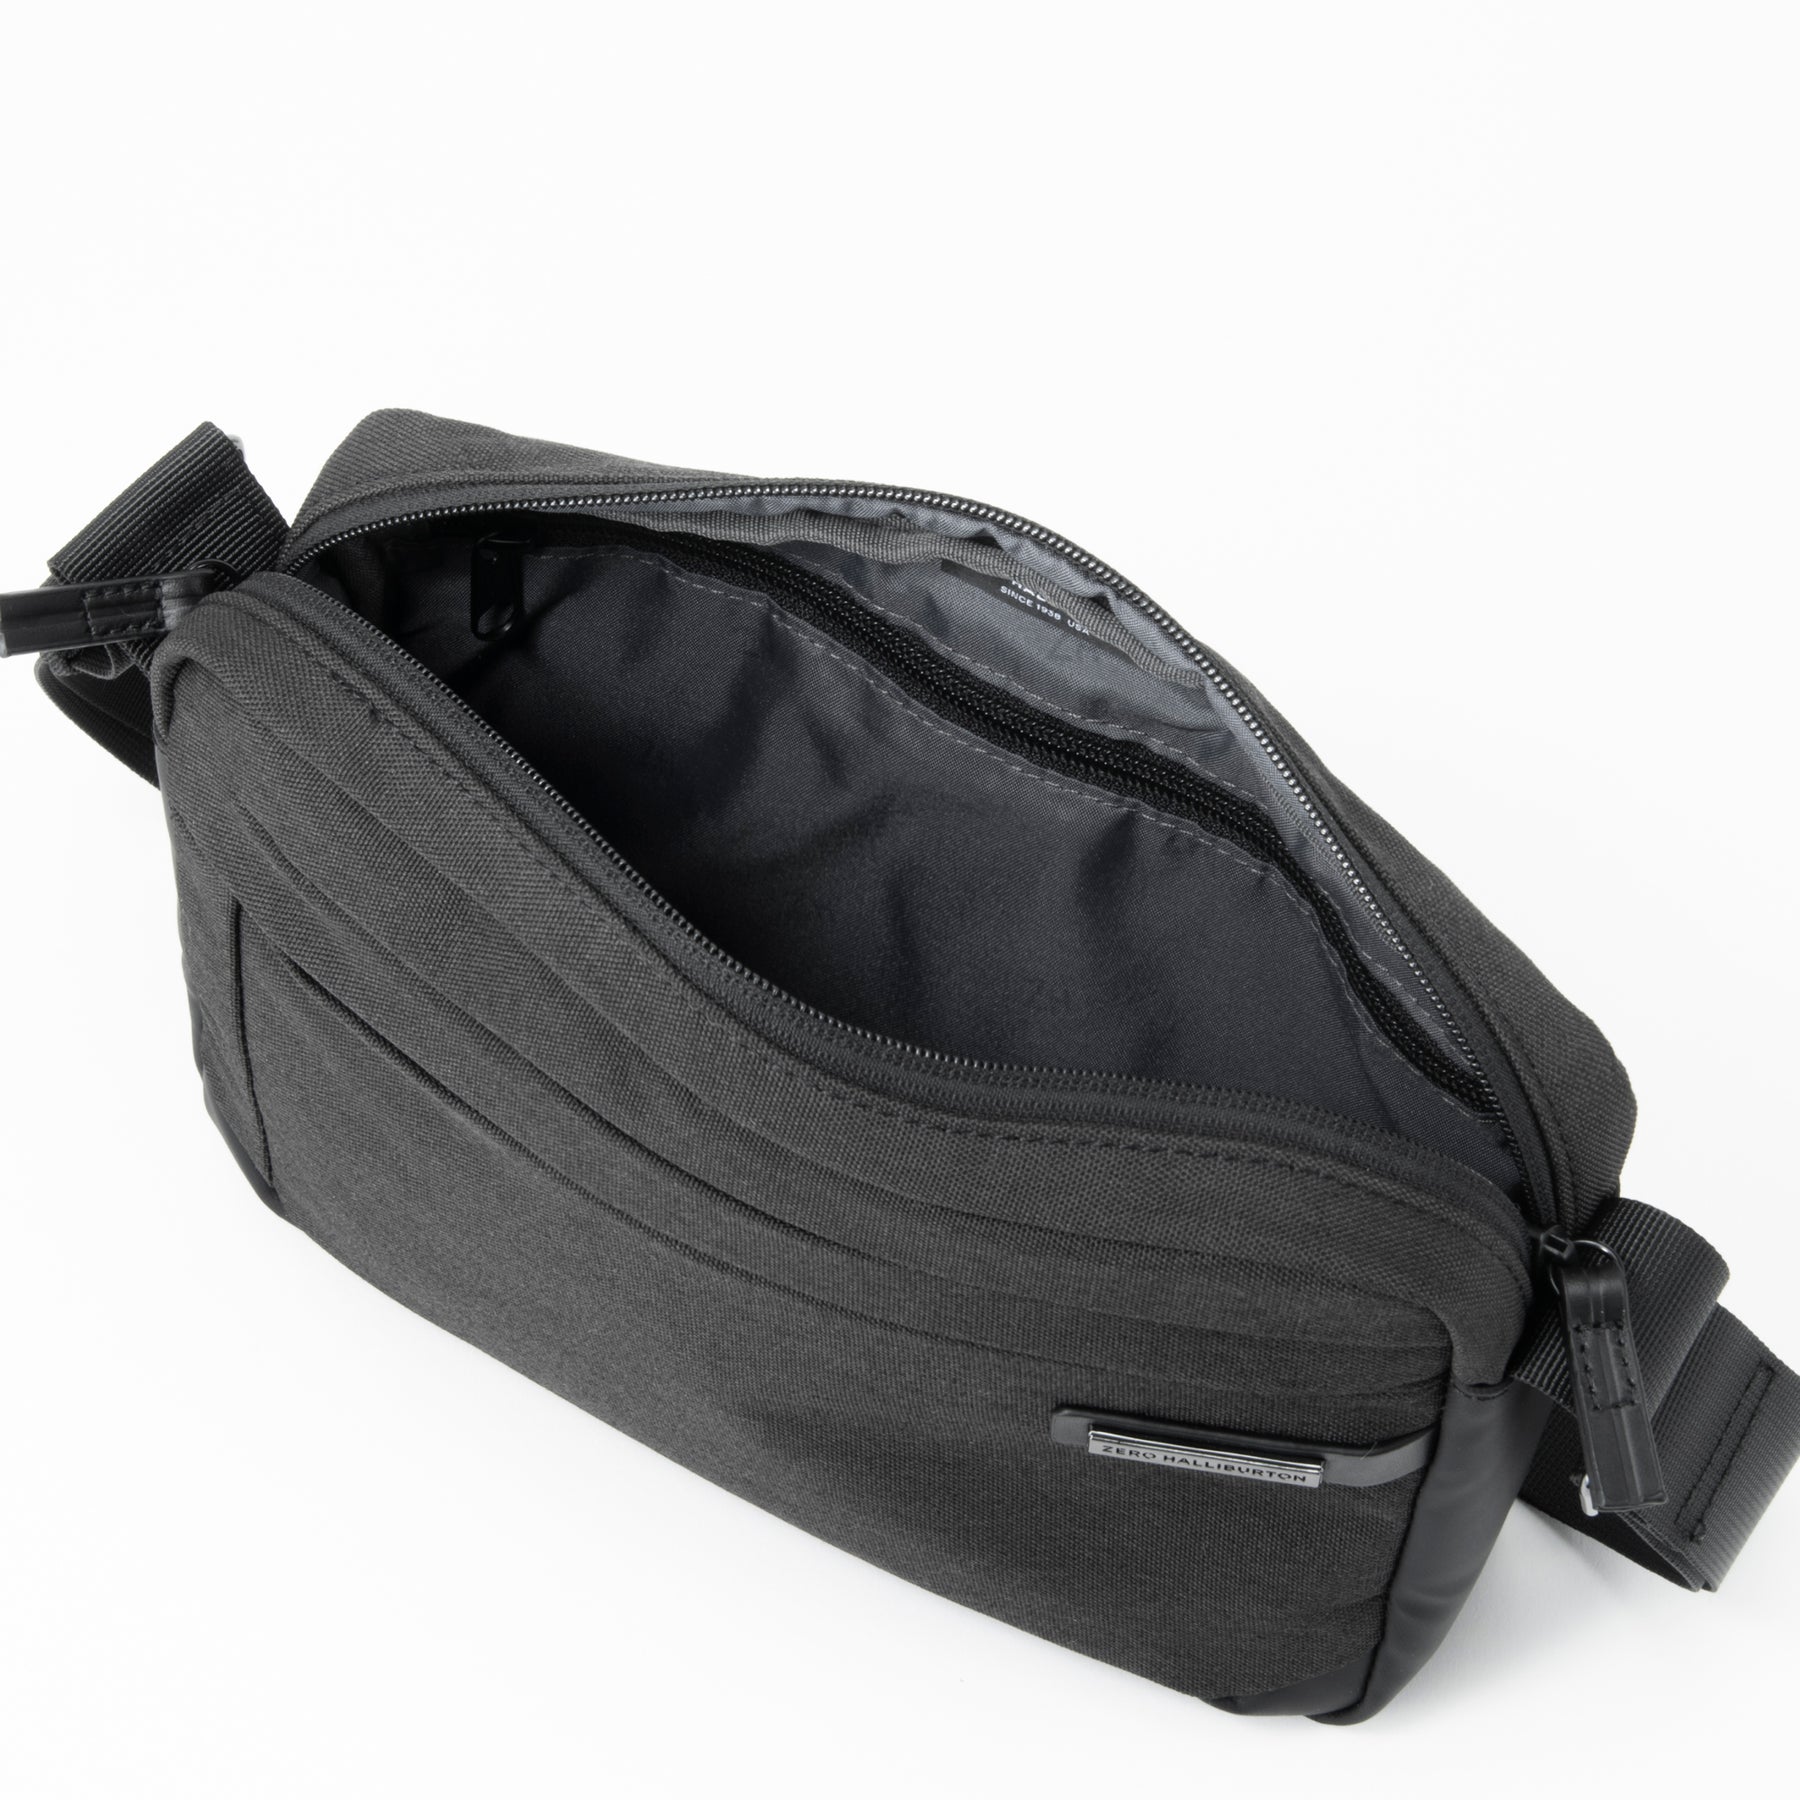 HLC | Horizontal Shoulder Bag  81403